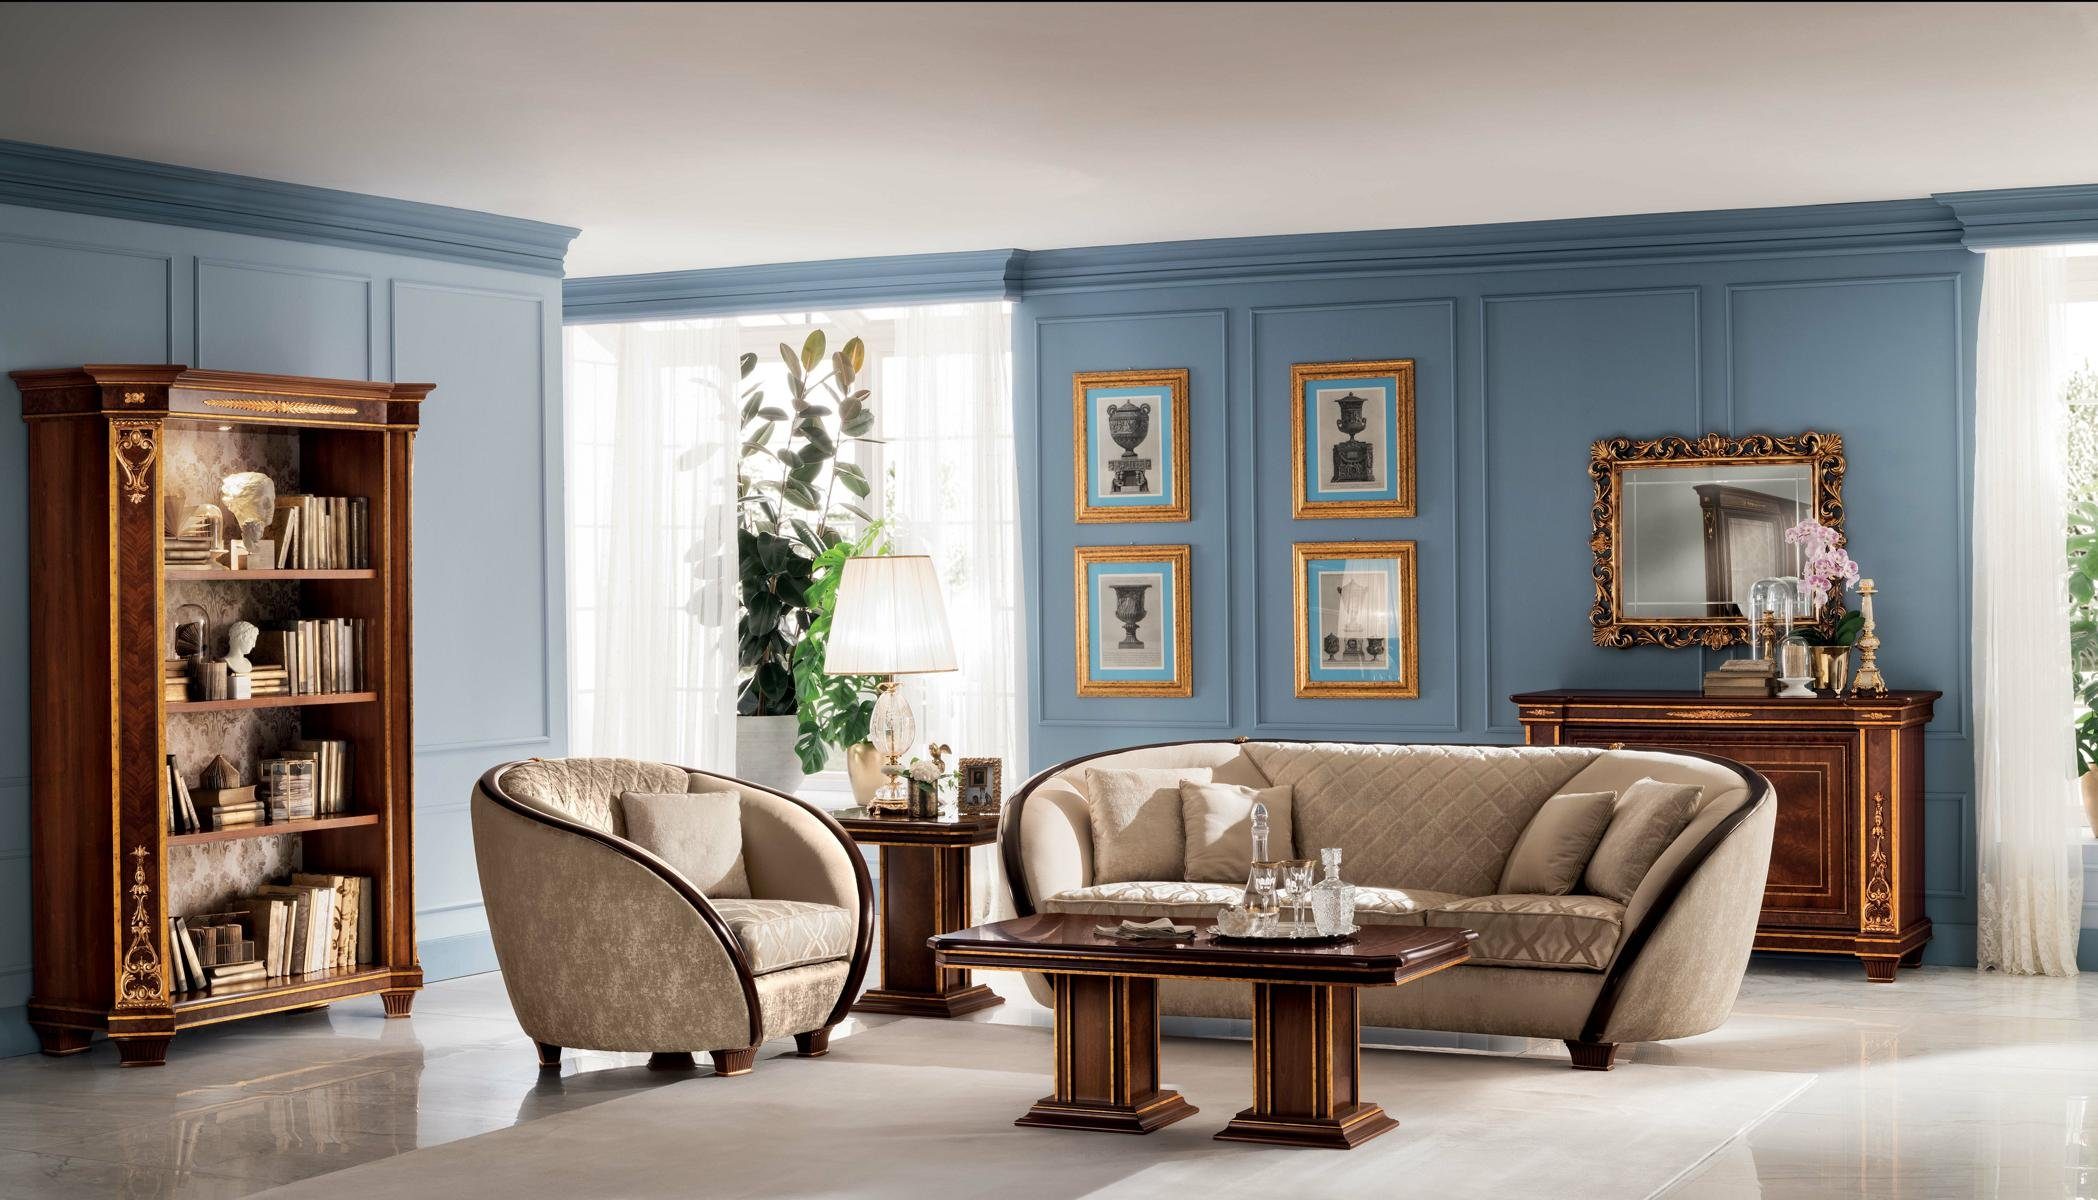 JVmoebel Wohnzimmer-Set, Luxus Möbel Sofagarnitur Klasse 3+2 Italienische Couch Sofa arredoclassic™ Neu